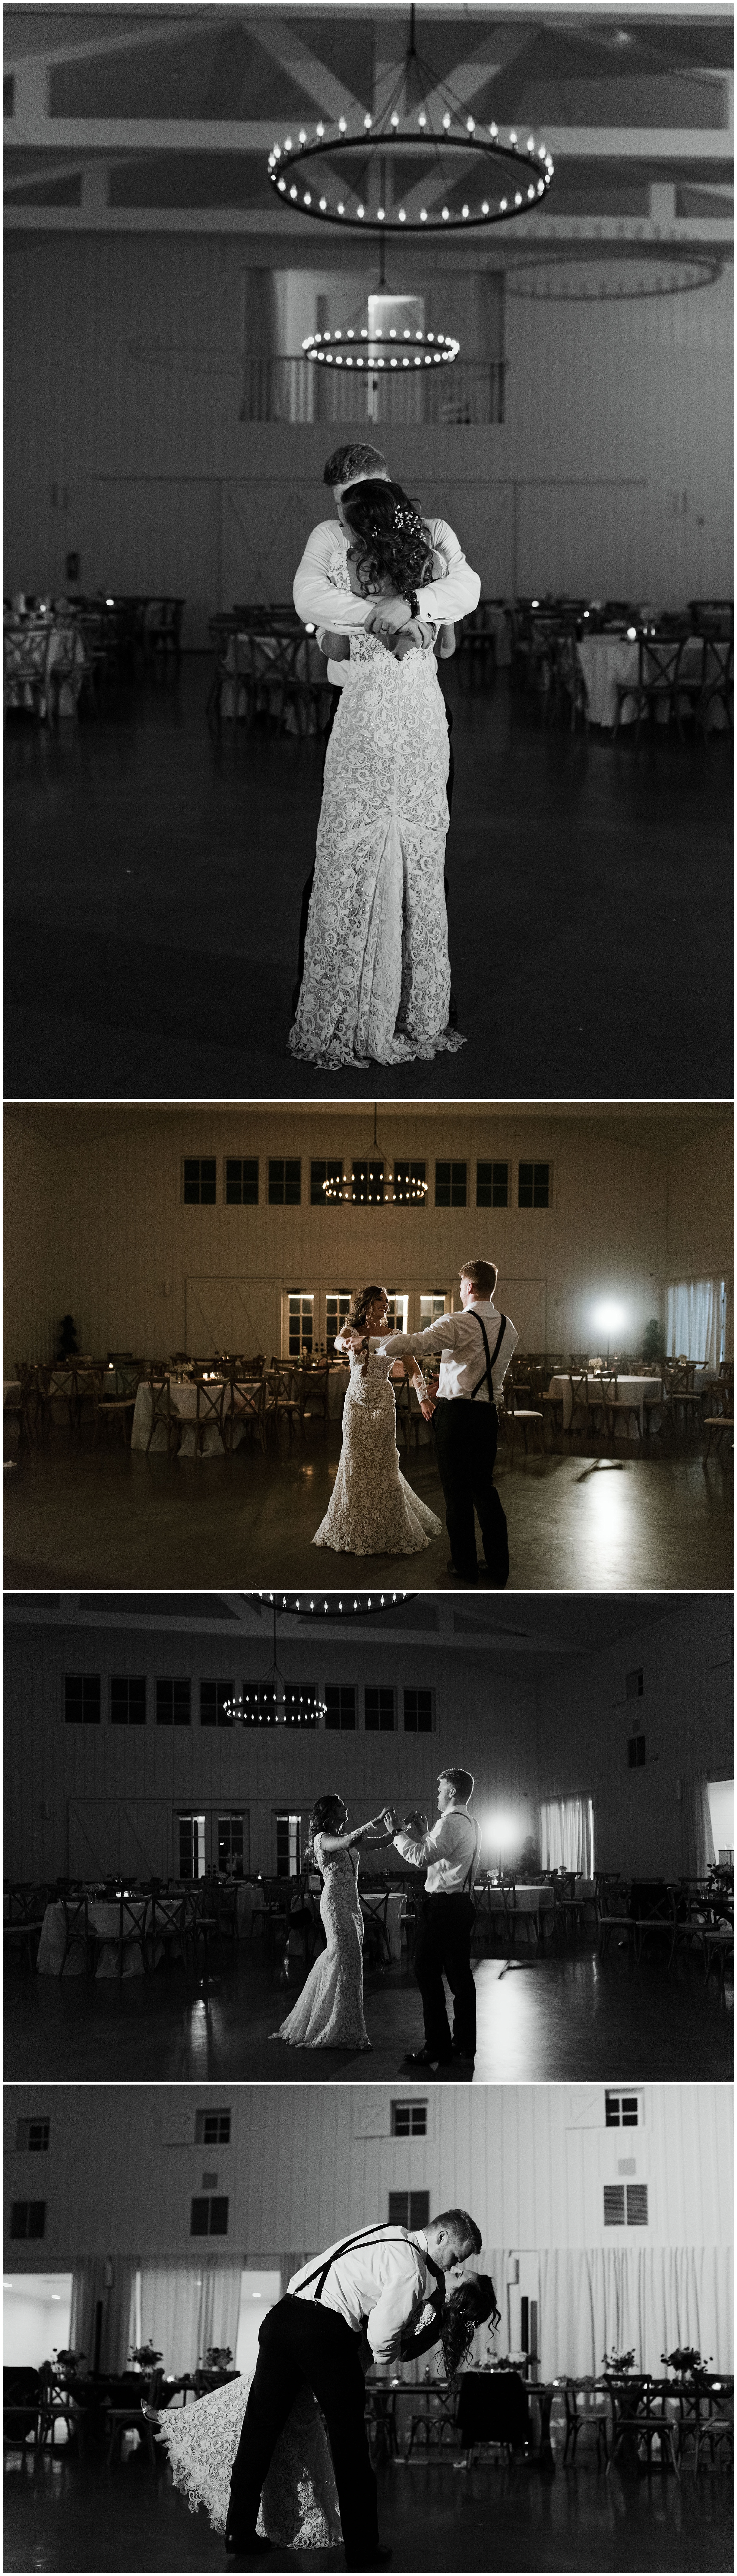  The Farmhouse Wedding | Fort Worth Wedding Photographer | Dallas Wedding Photographer | www.jordanmitchellphotography.com 